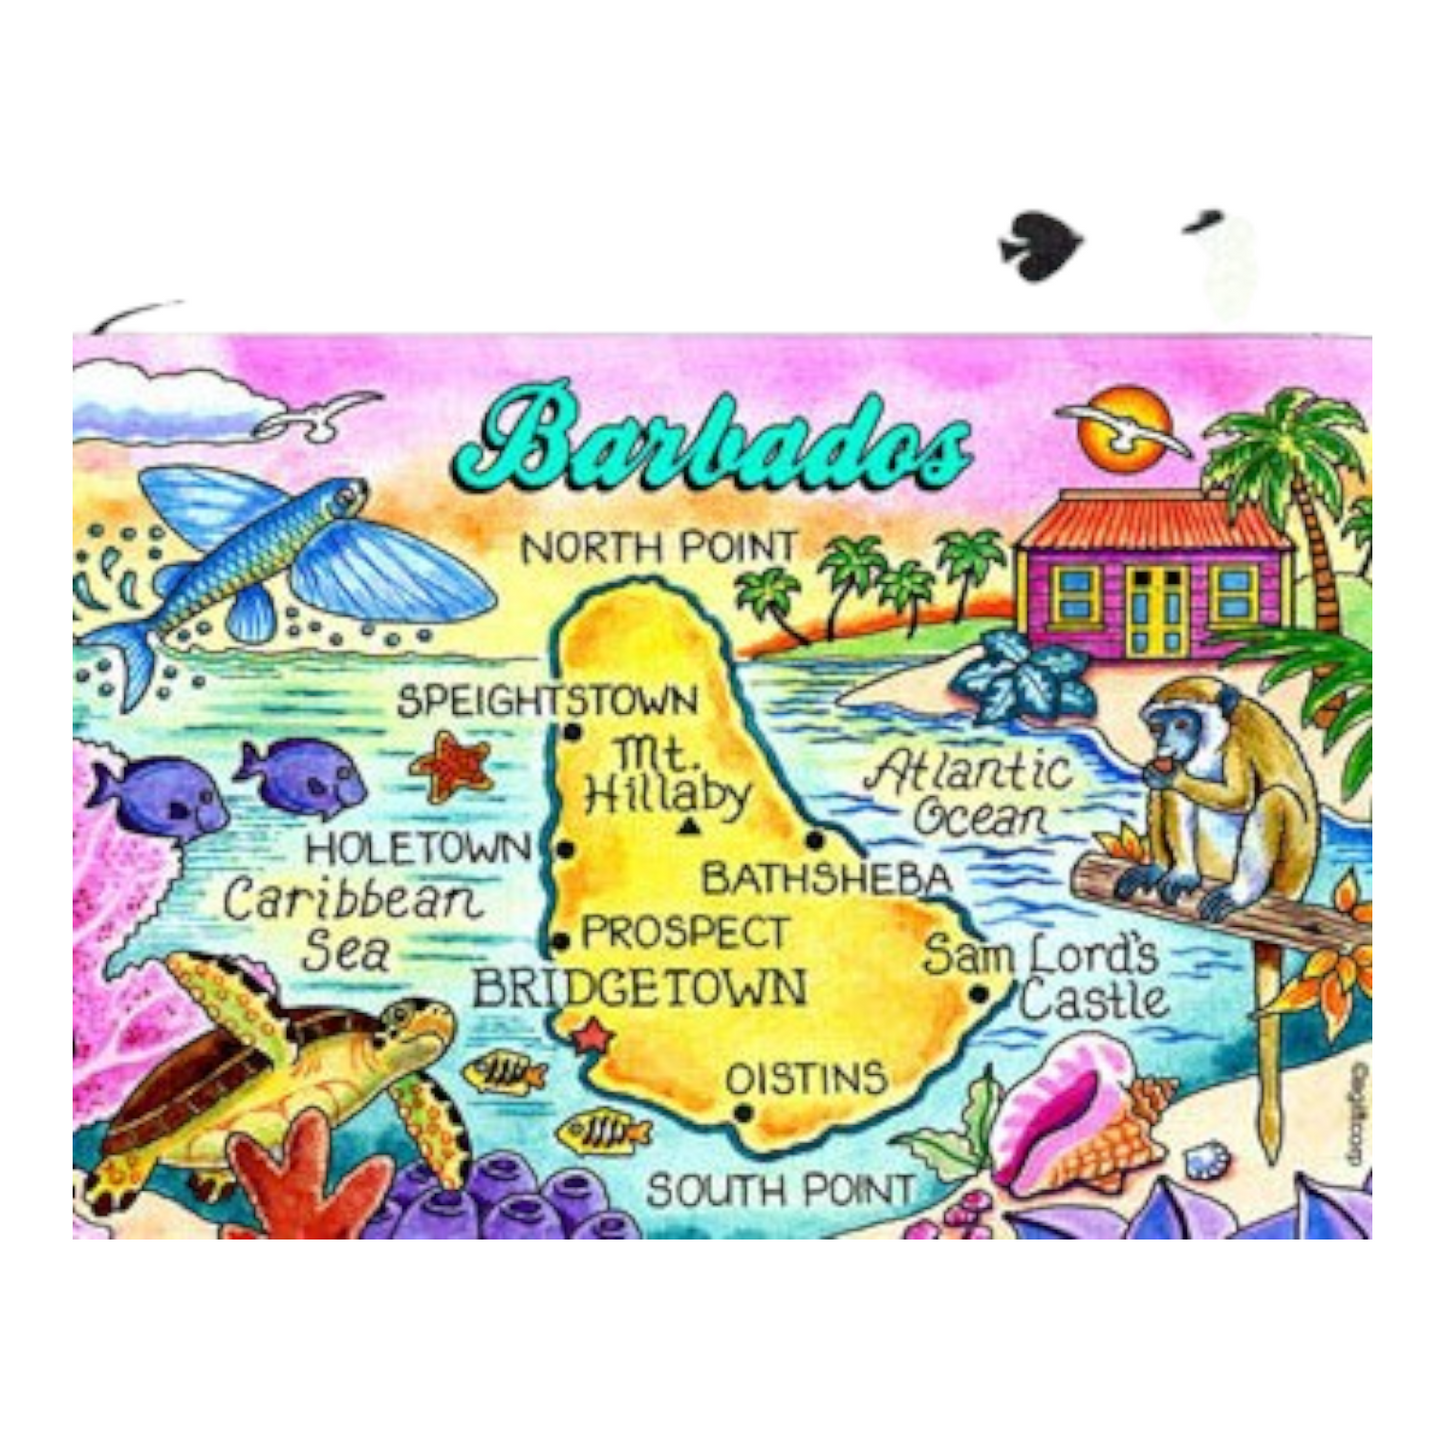 Barbados Map Collectible Souvenir Playing Cards